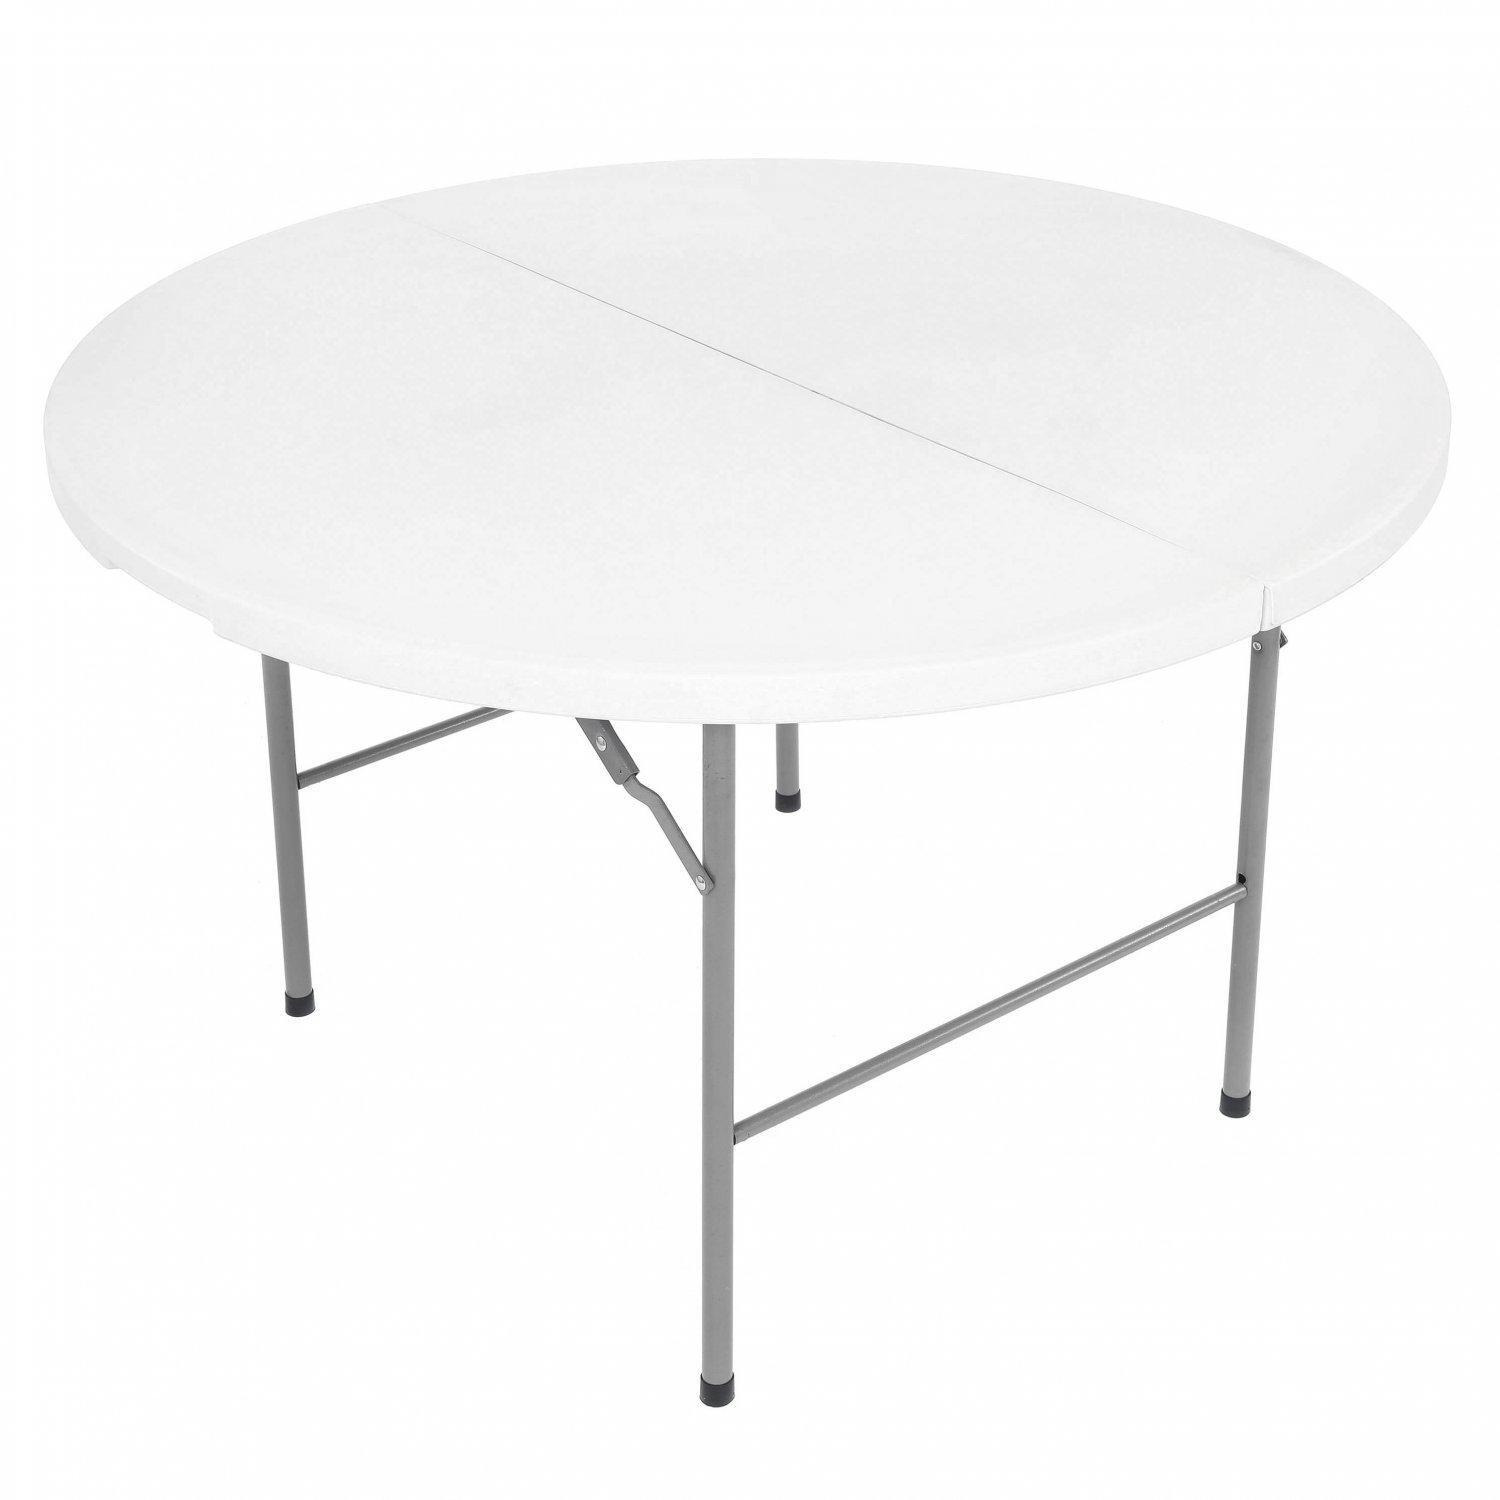 4ft Round Folding Trestle Table - image 1